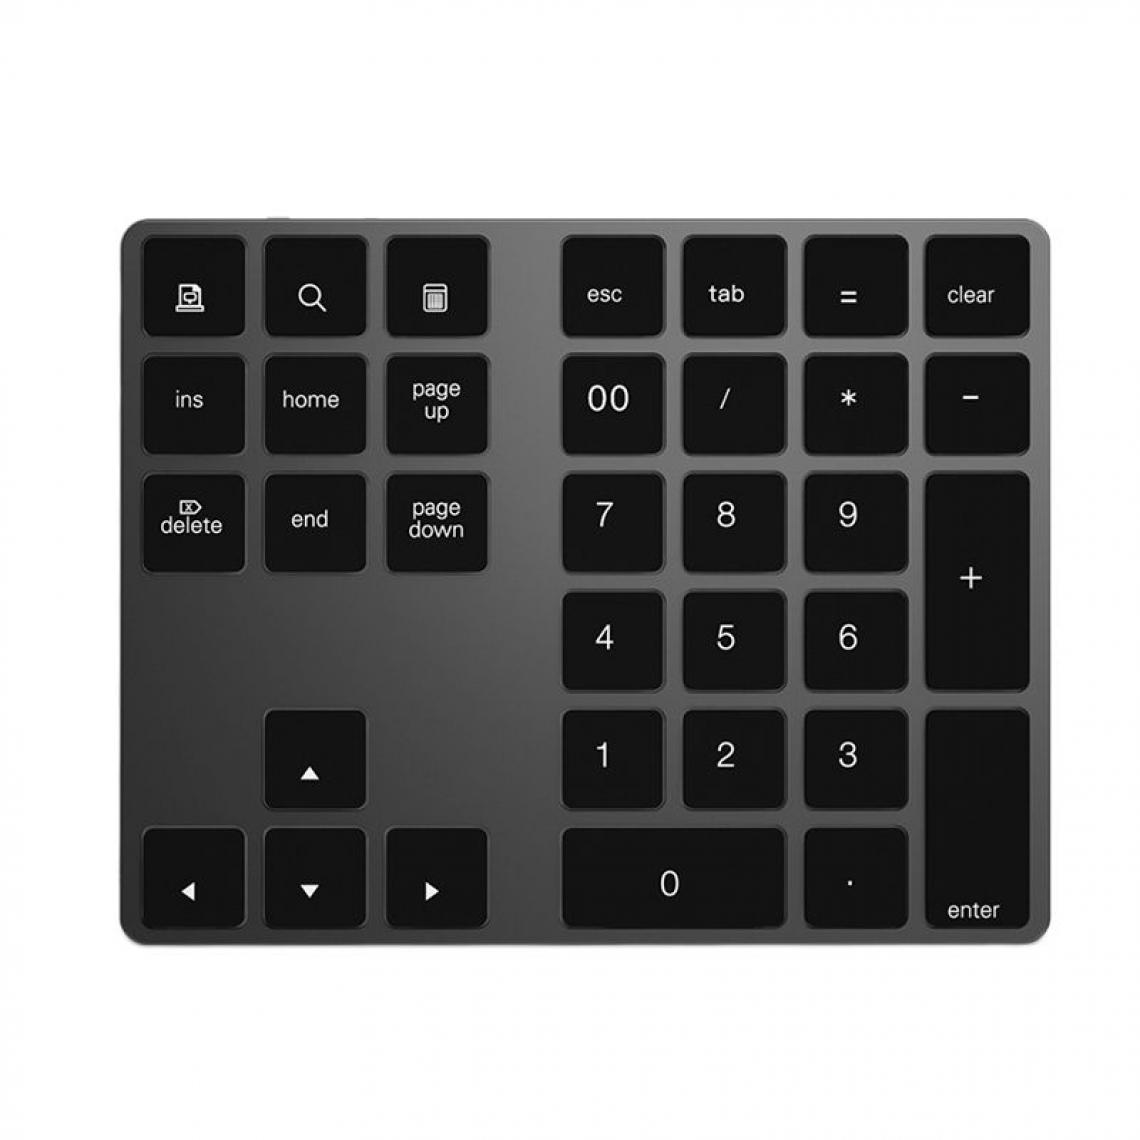 Generic - Clavier numérique sans fil Bluetooth 3.0, 34 touches  pour comptabilité, compatible  avec Mac Windows IOS, PC OS Android, tablette et ordinateur portables 14.6 * 11.4 * 0.9 cm - Noir  - Clavier